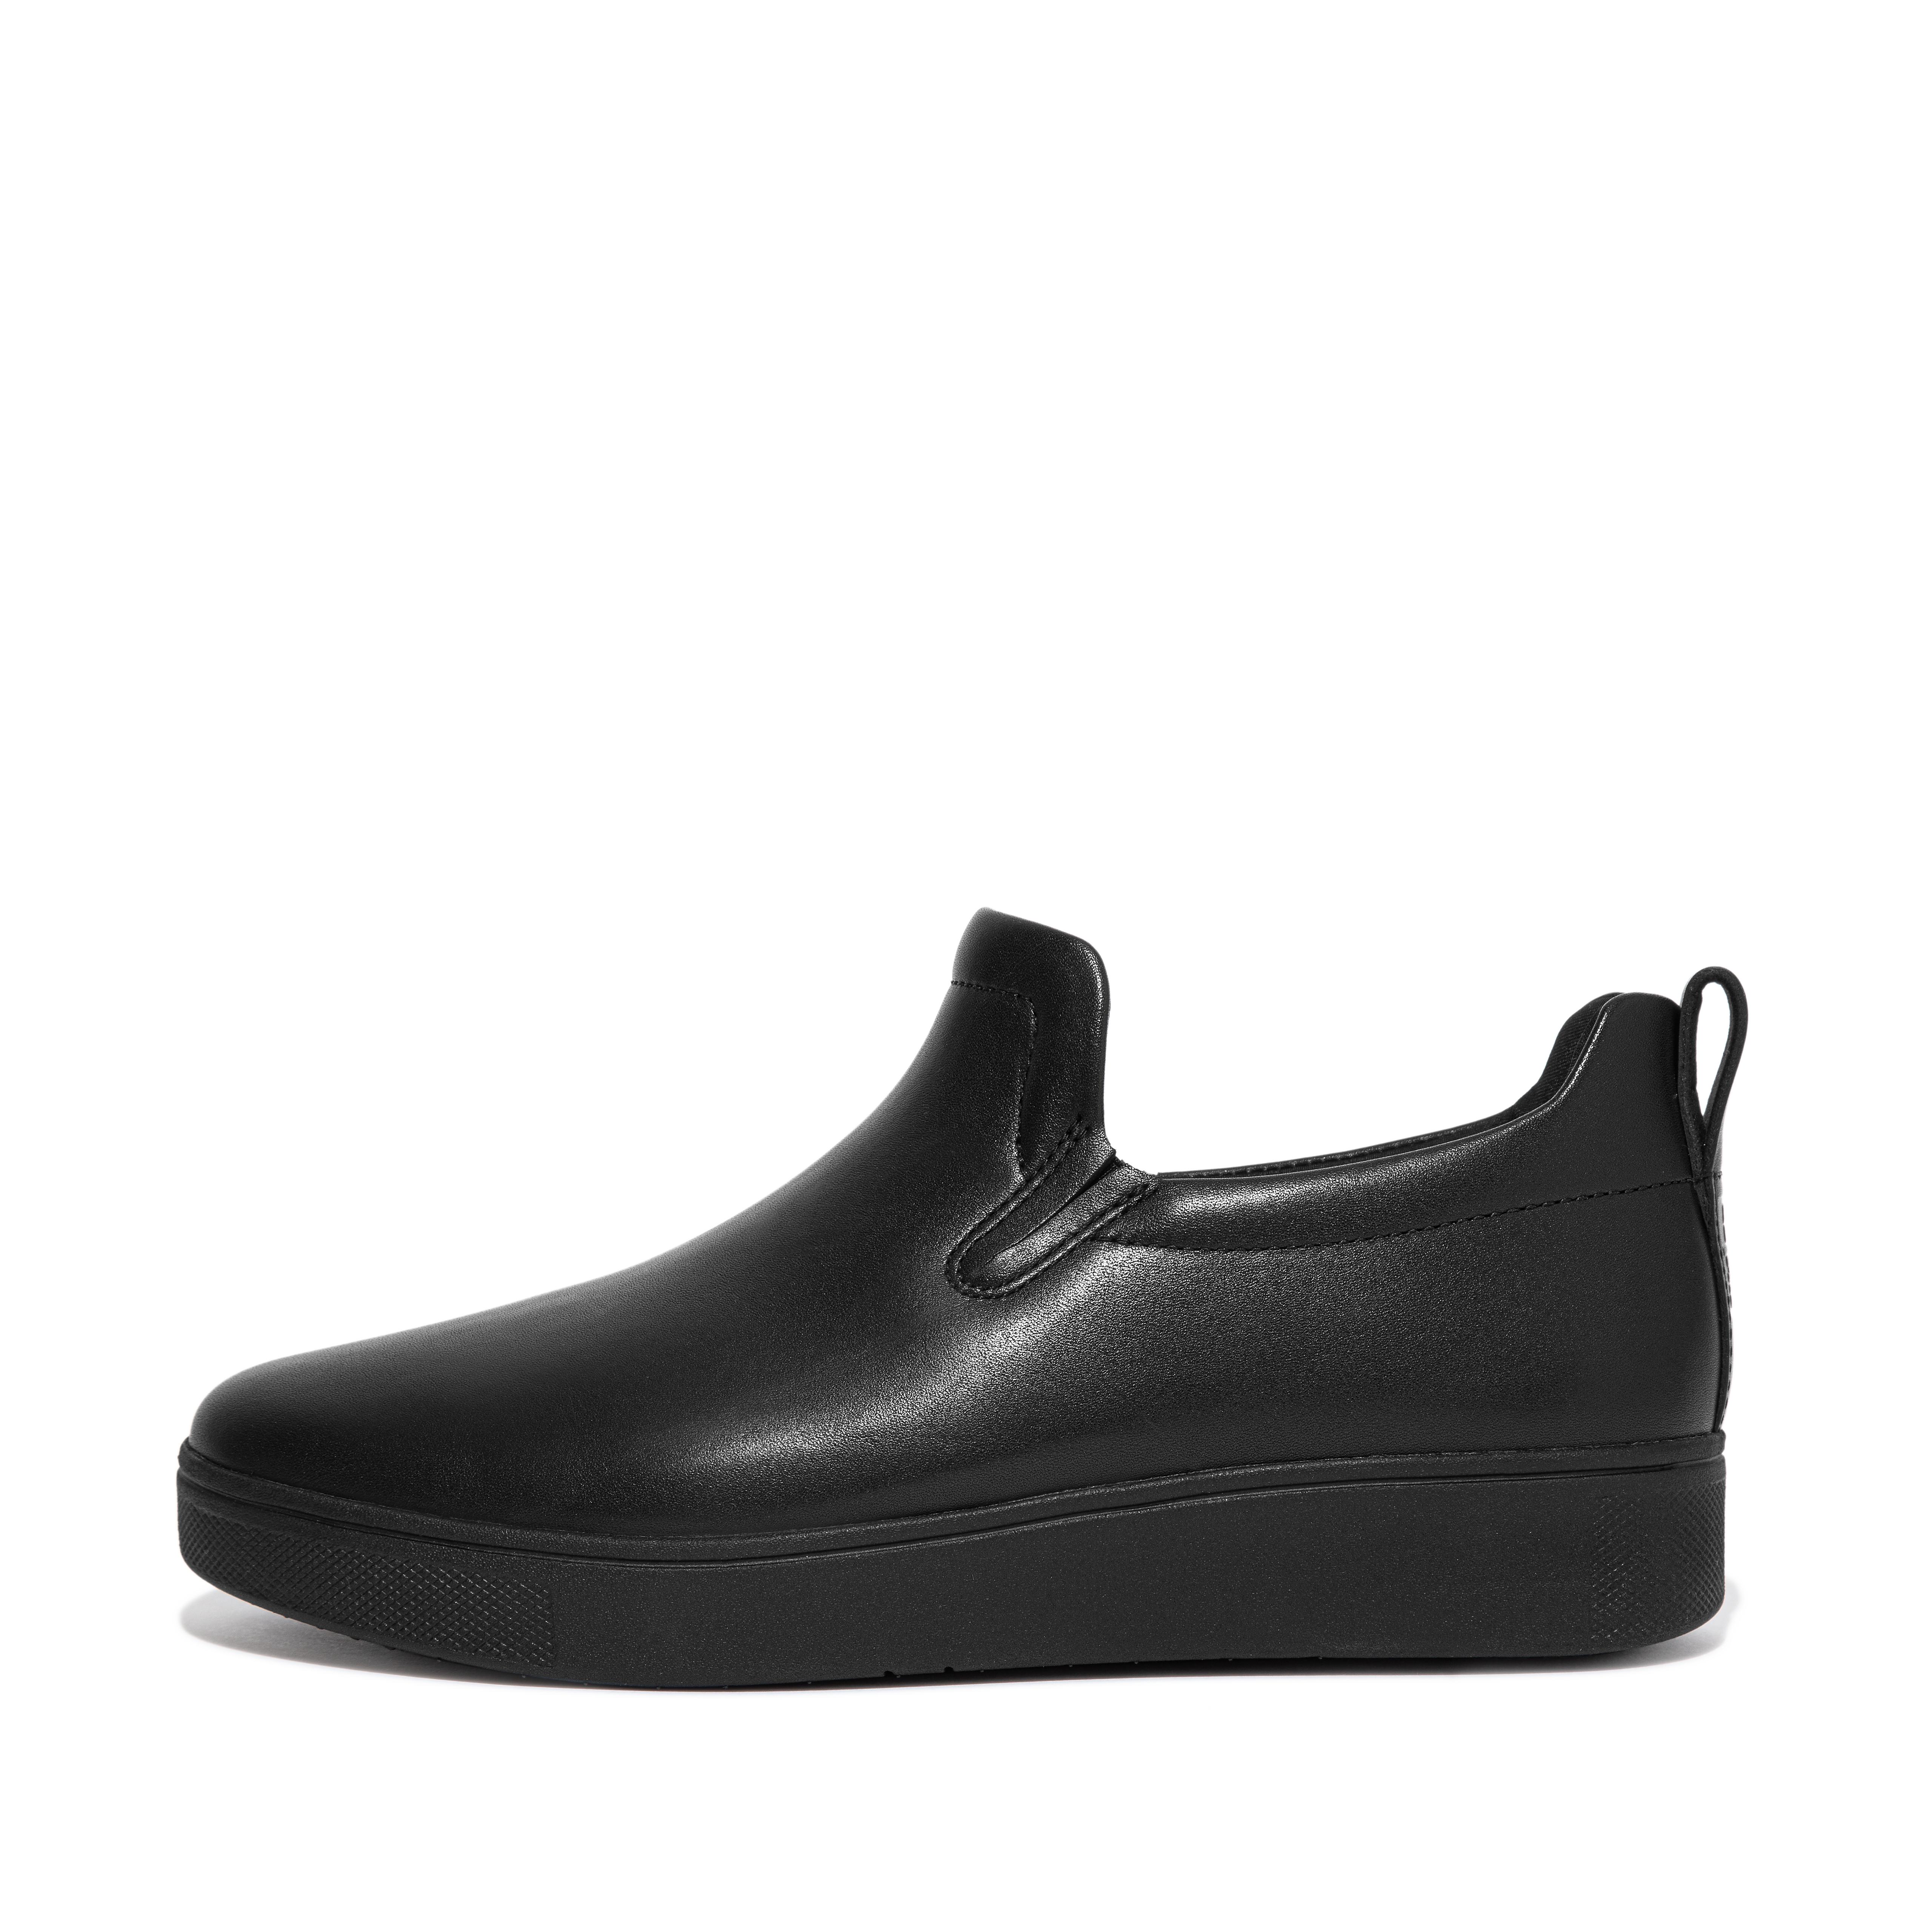 핏플랍 스니커즈 FitFlop RALLY Leather Skate Sneakers,All Black